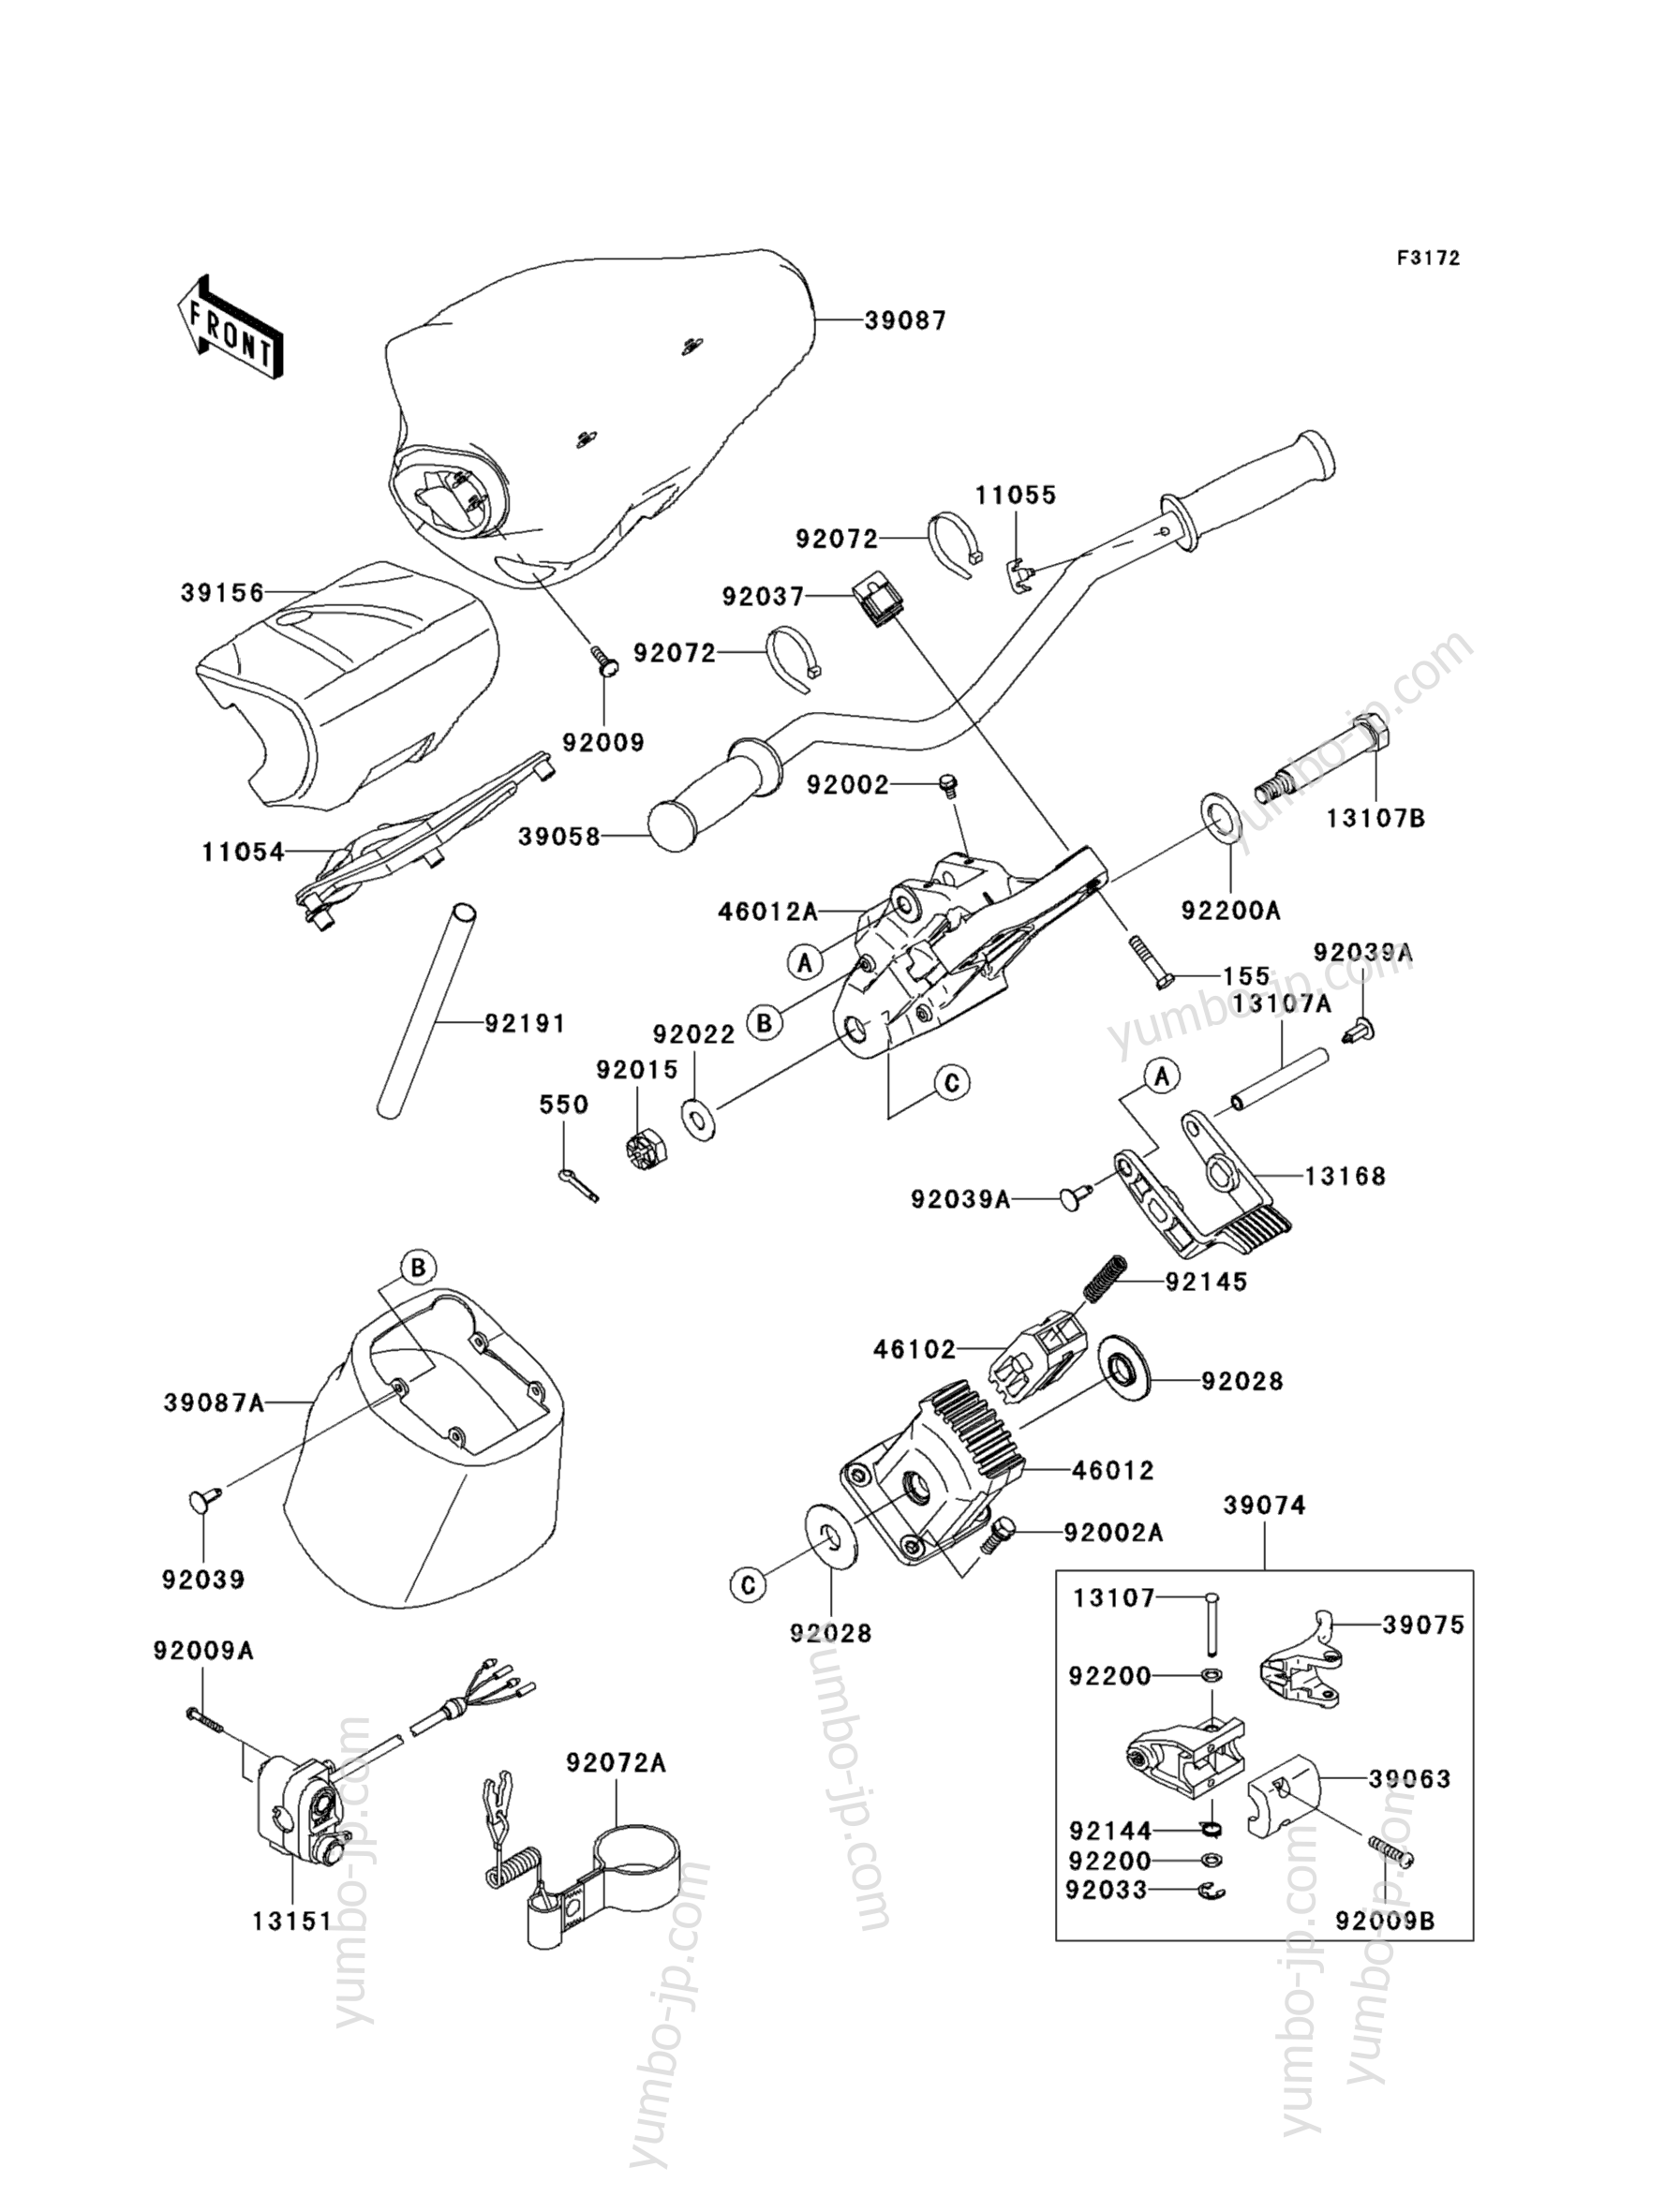 Румпель (рукоятка управления) для гидроциклов KAWASAKI JET SKI ULTRA LX (JT1500GAF) 2010 г.